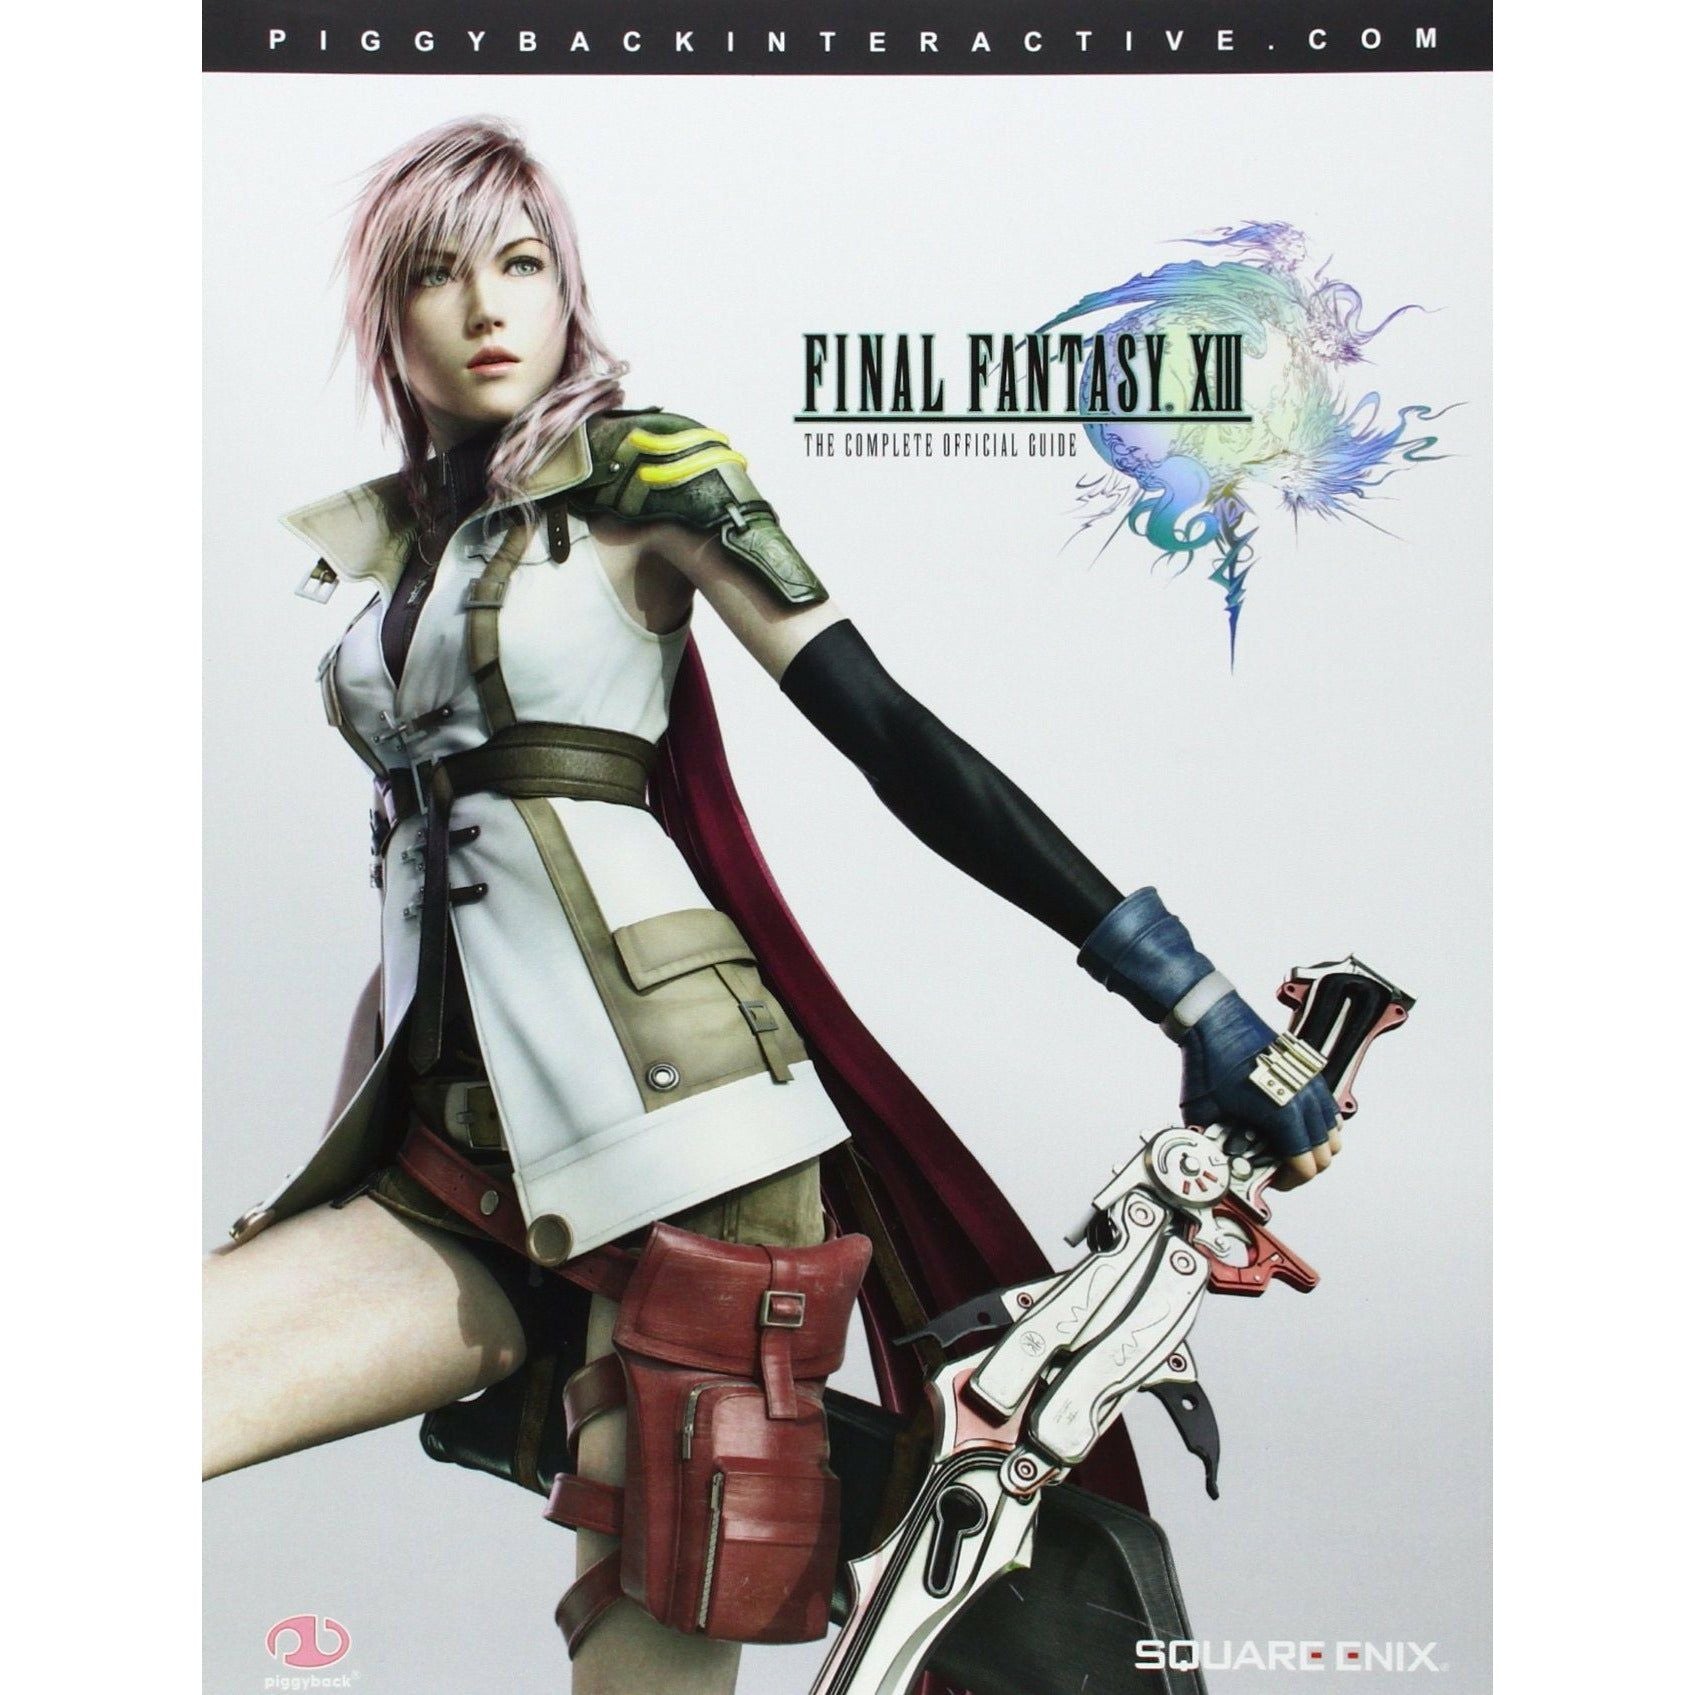 STRAT - Final Fantasy XIII Le Guide Officiel Complet - Piggyback